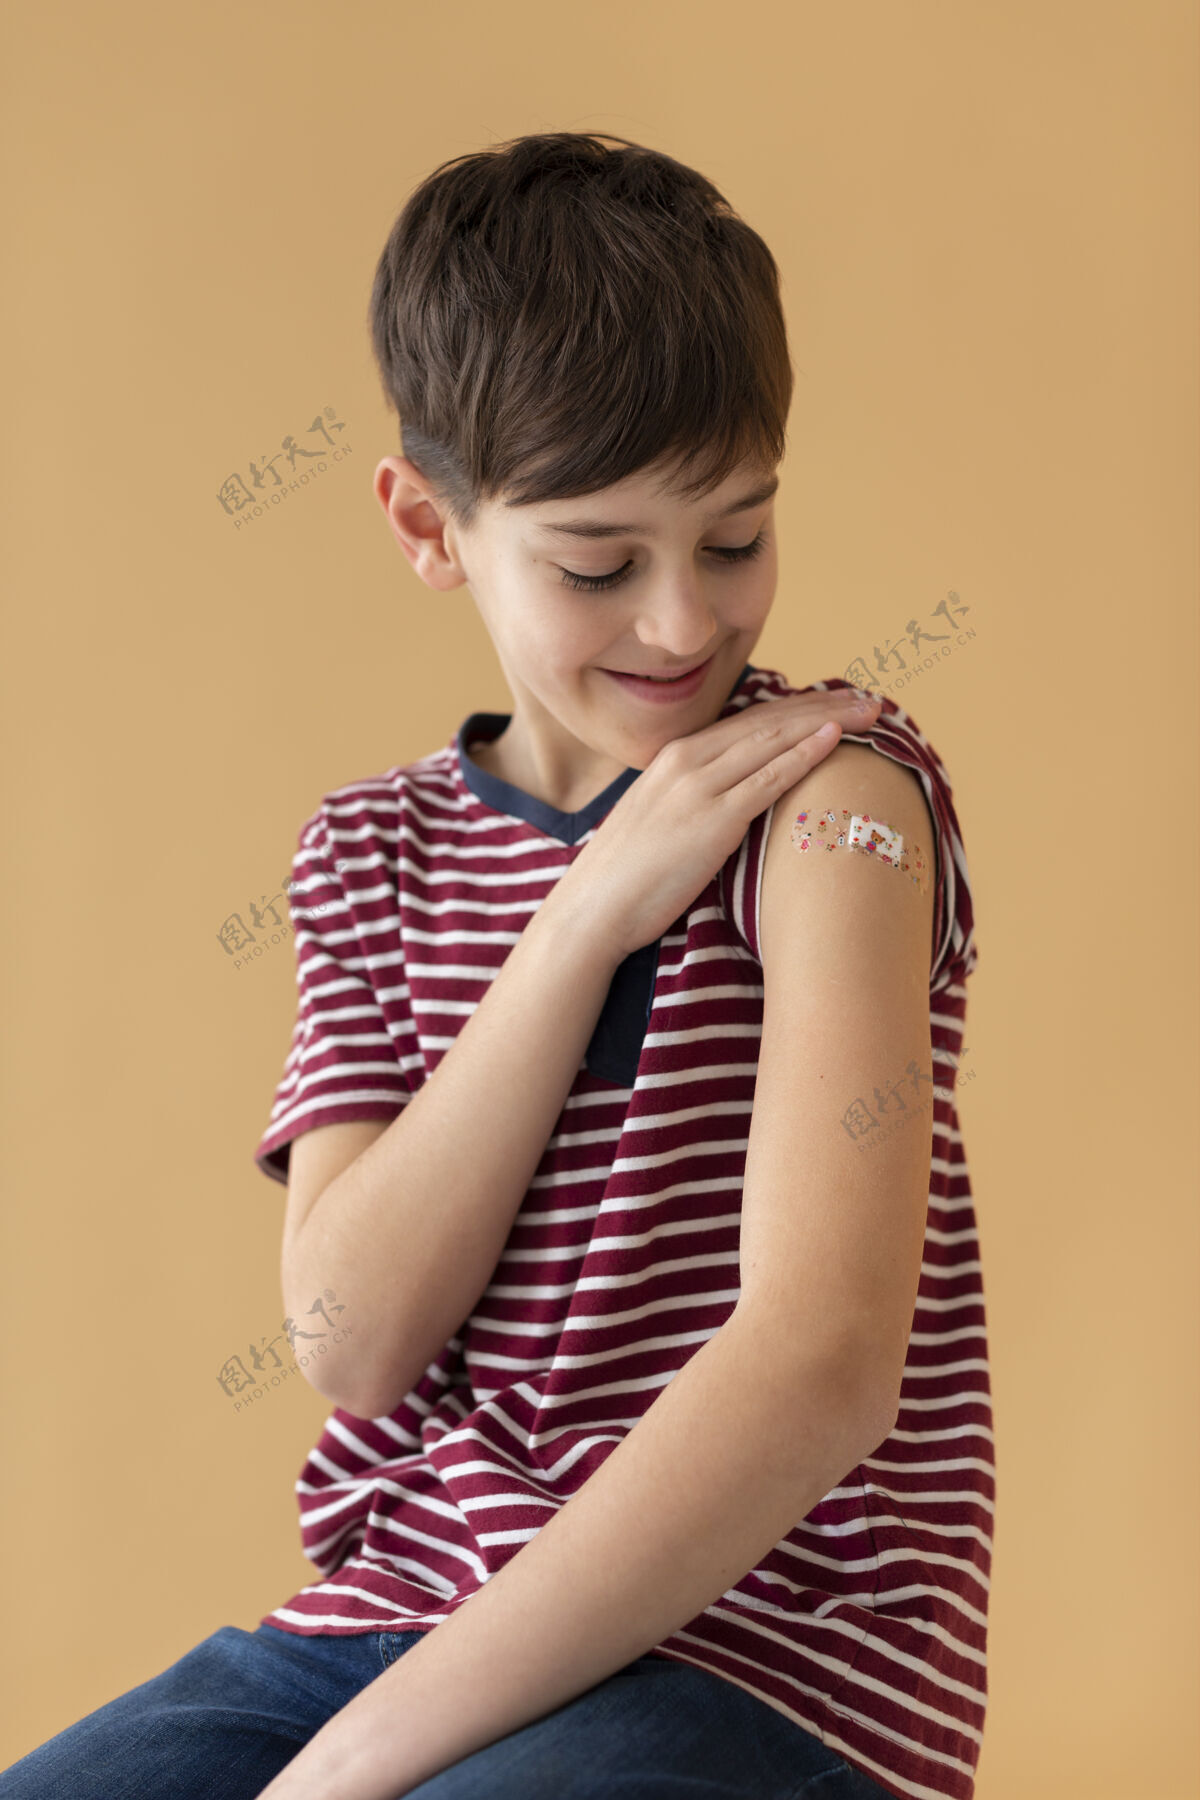 保健接种疫苗后中枪笑脸小子垂直医学中枪